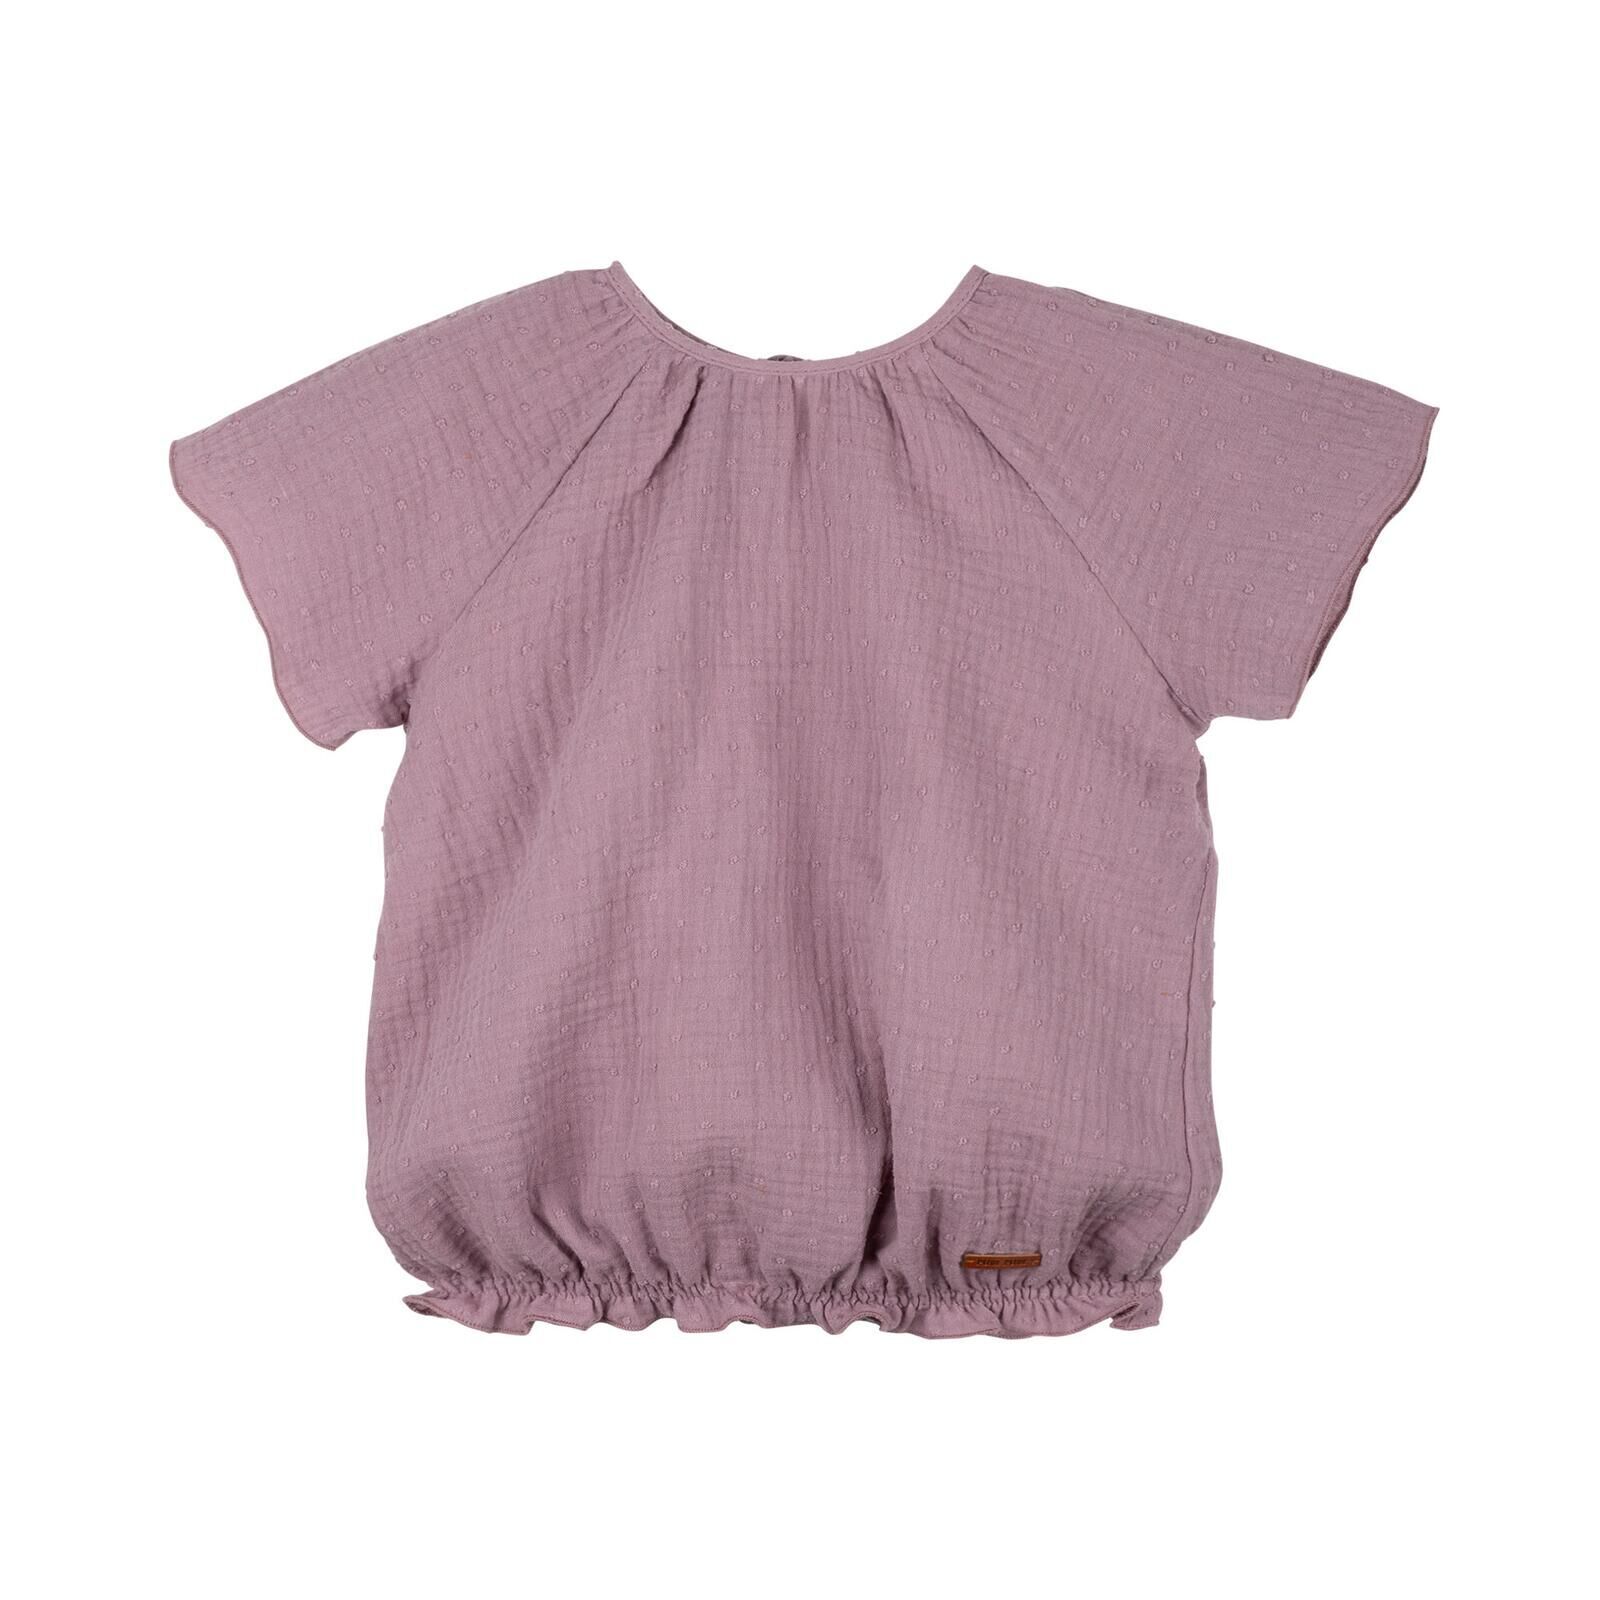 PURE PURE Kinder Mini-Bluse Mull dark-lavender 110/116